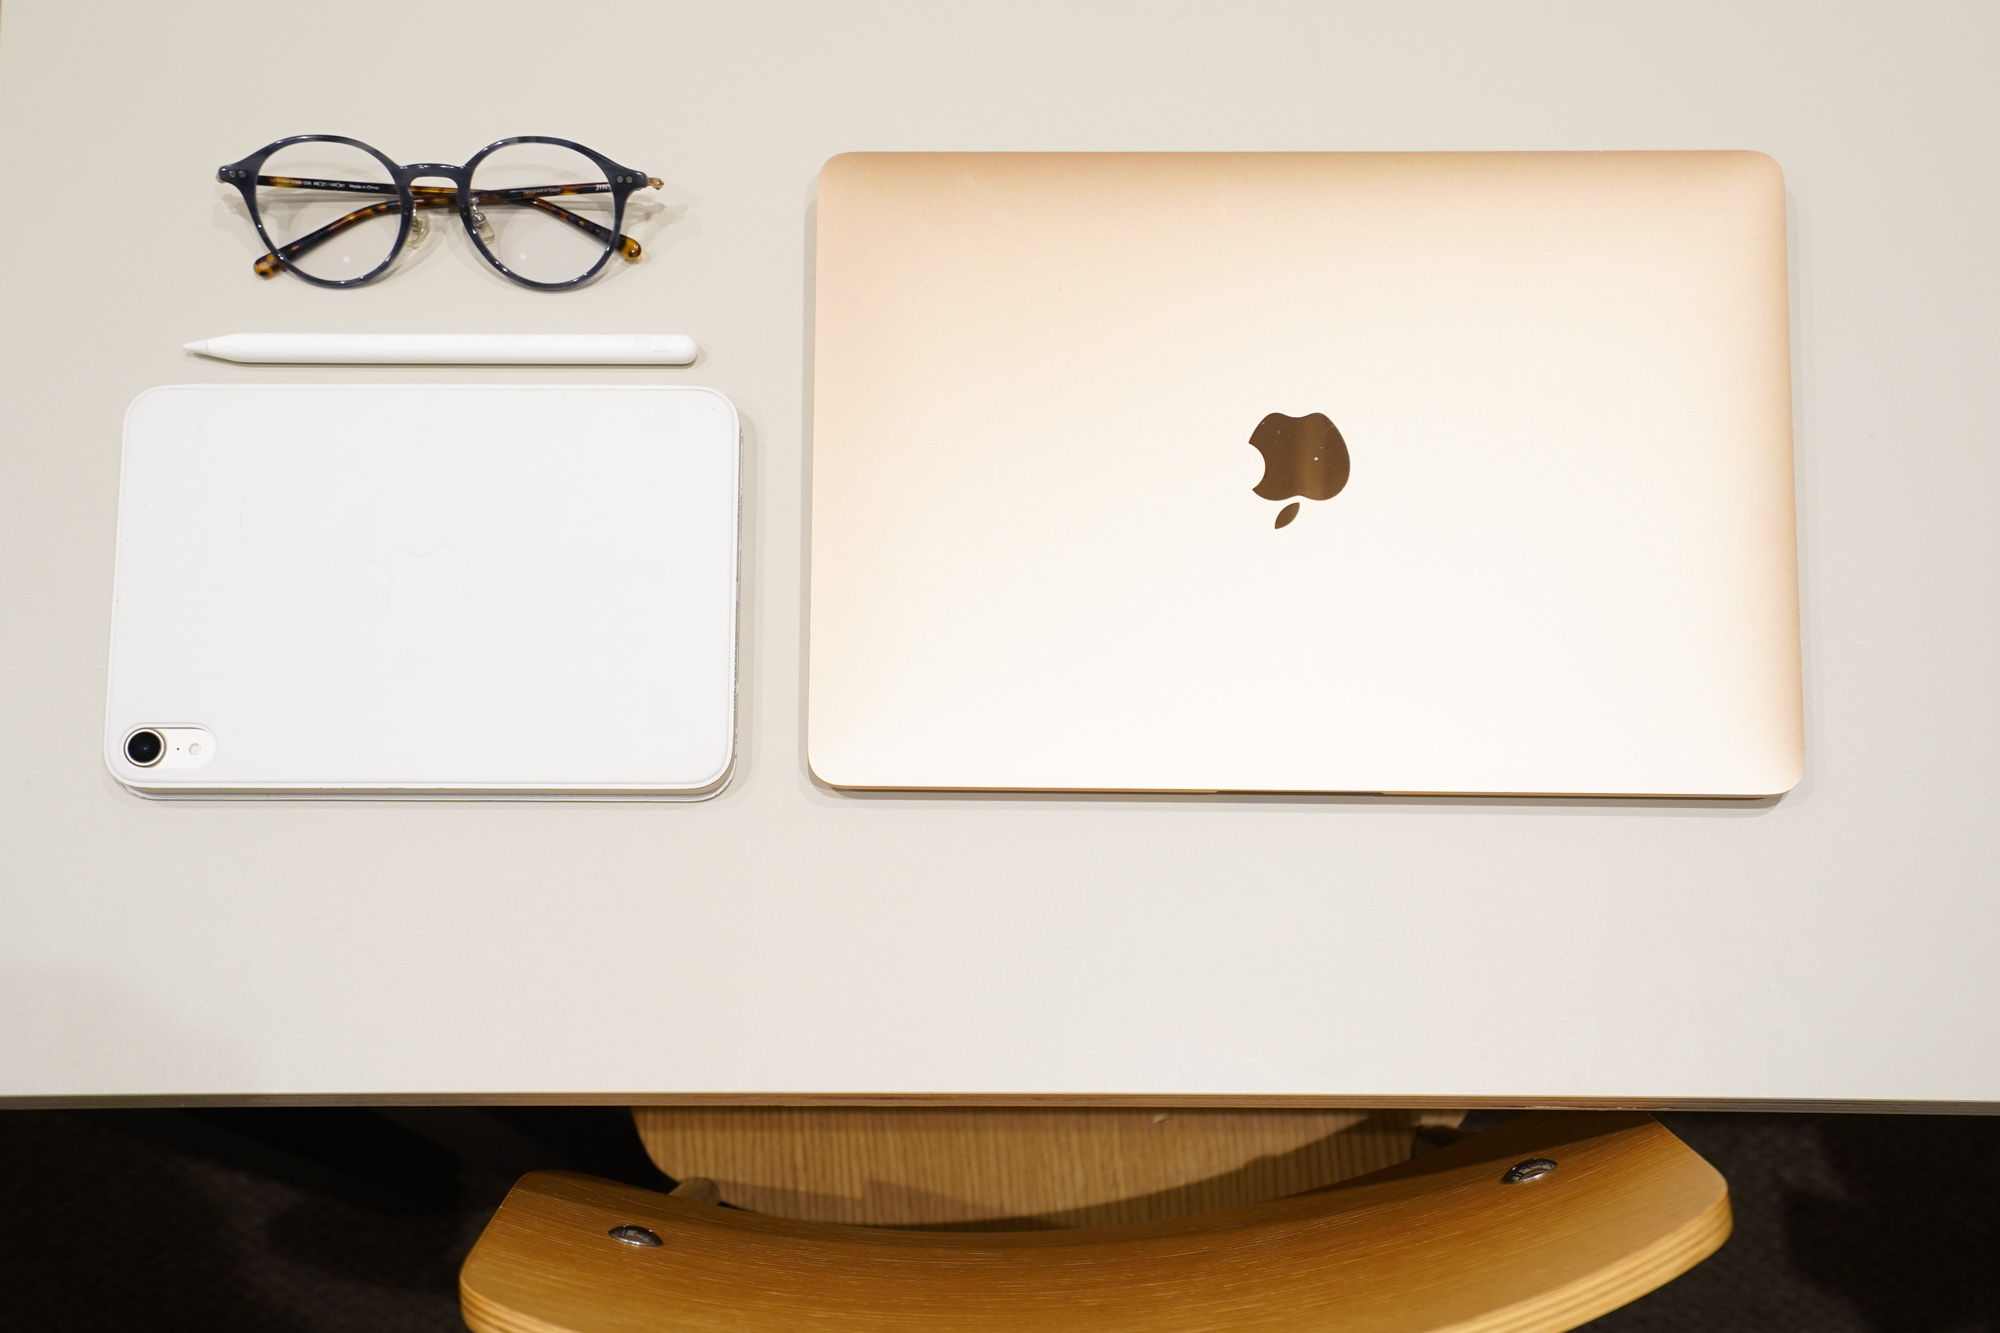 Iさんの仕事道具はかなりシンプル。MacBookと、メモなどに利用するタブレット、そしてメガネ。